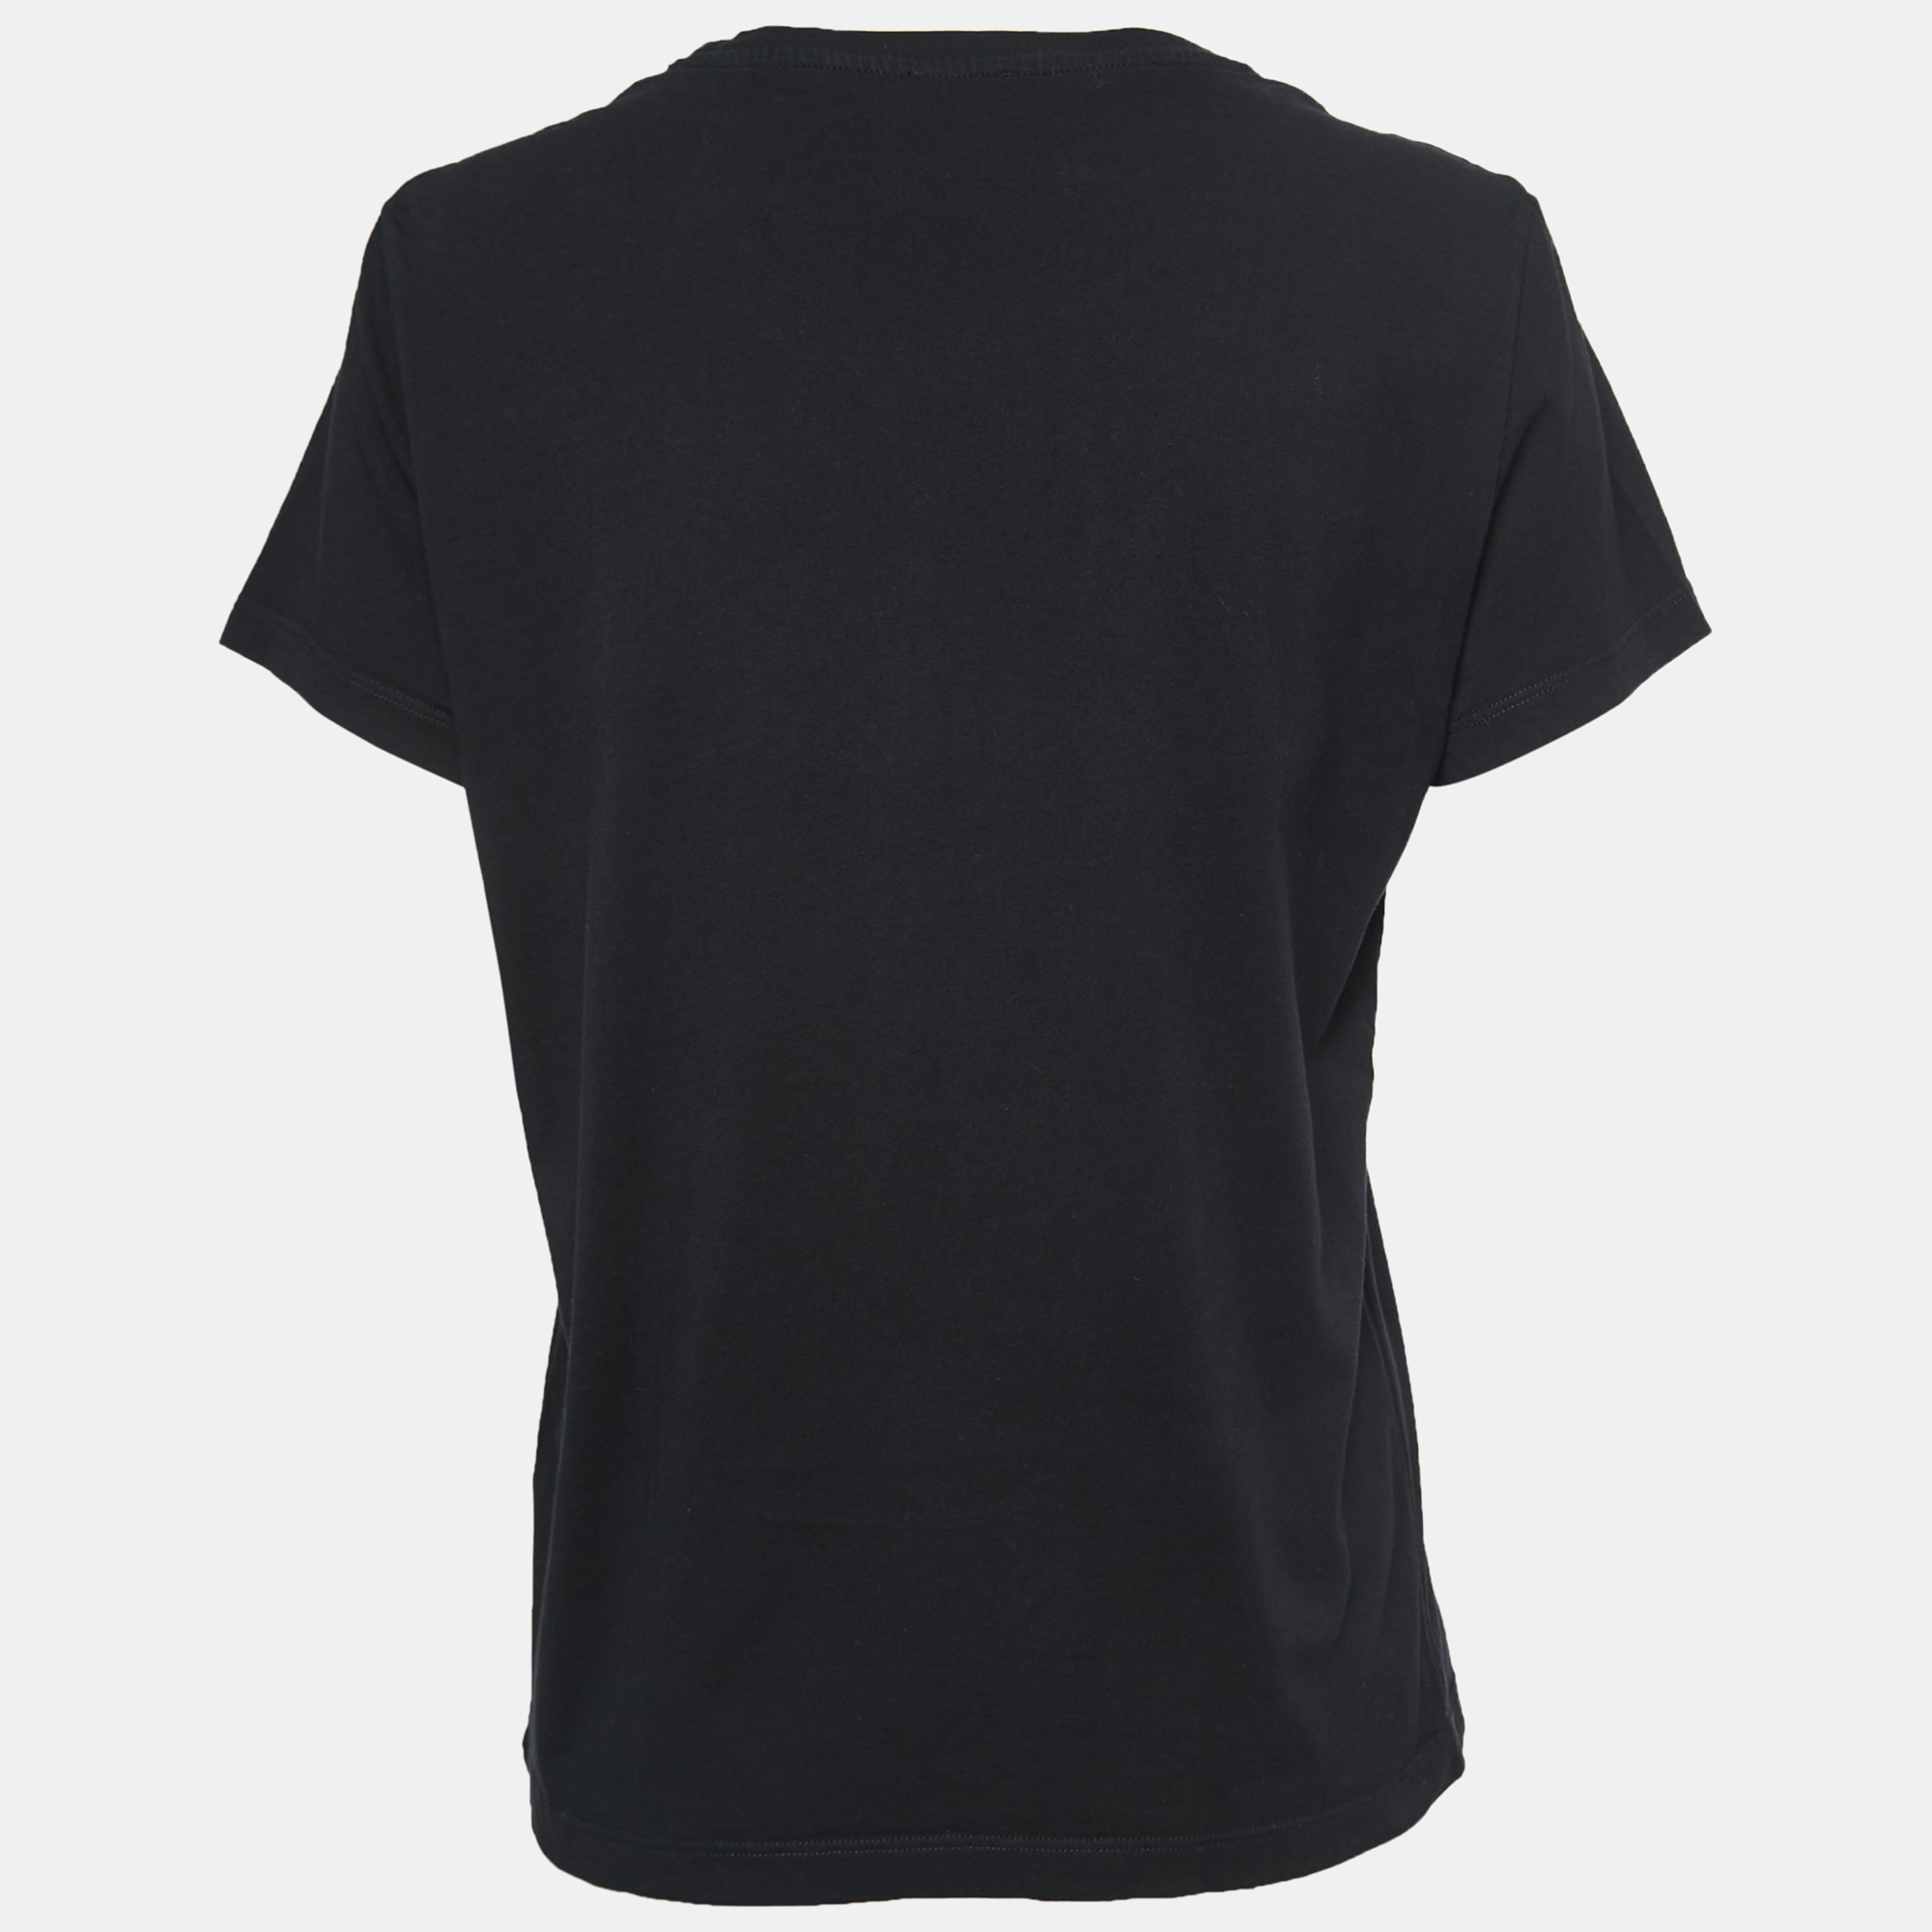 

Kenzo Black Cotton Tiger Motif Print T-Shirt